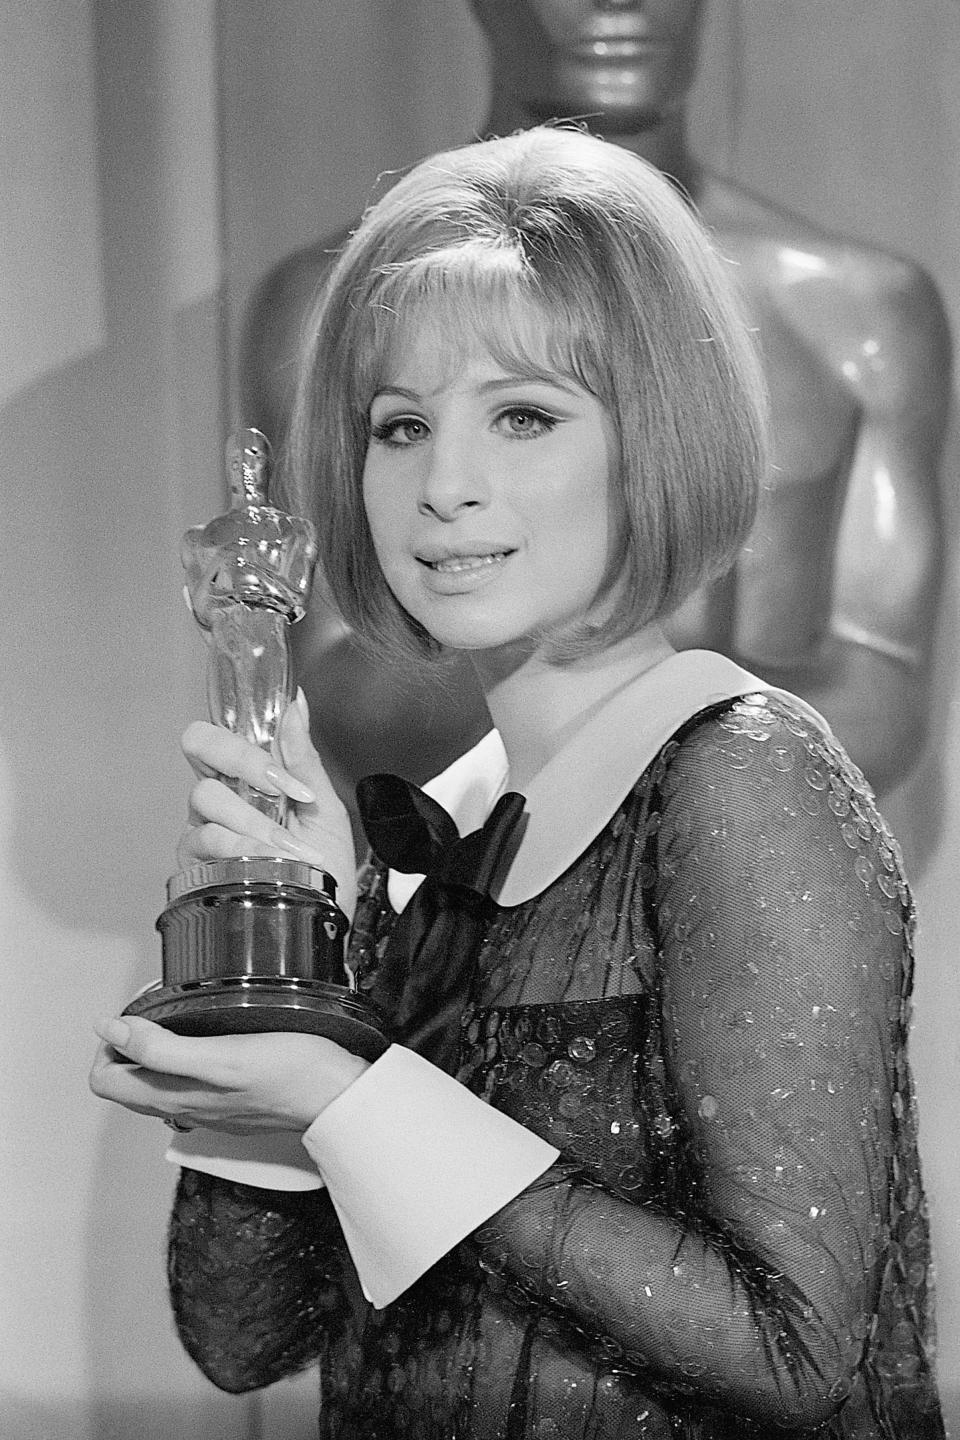 1969: Barbra Streisand's Mod Pouf